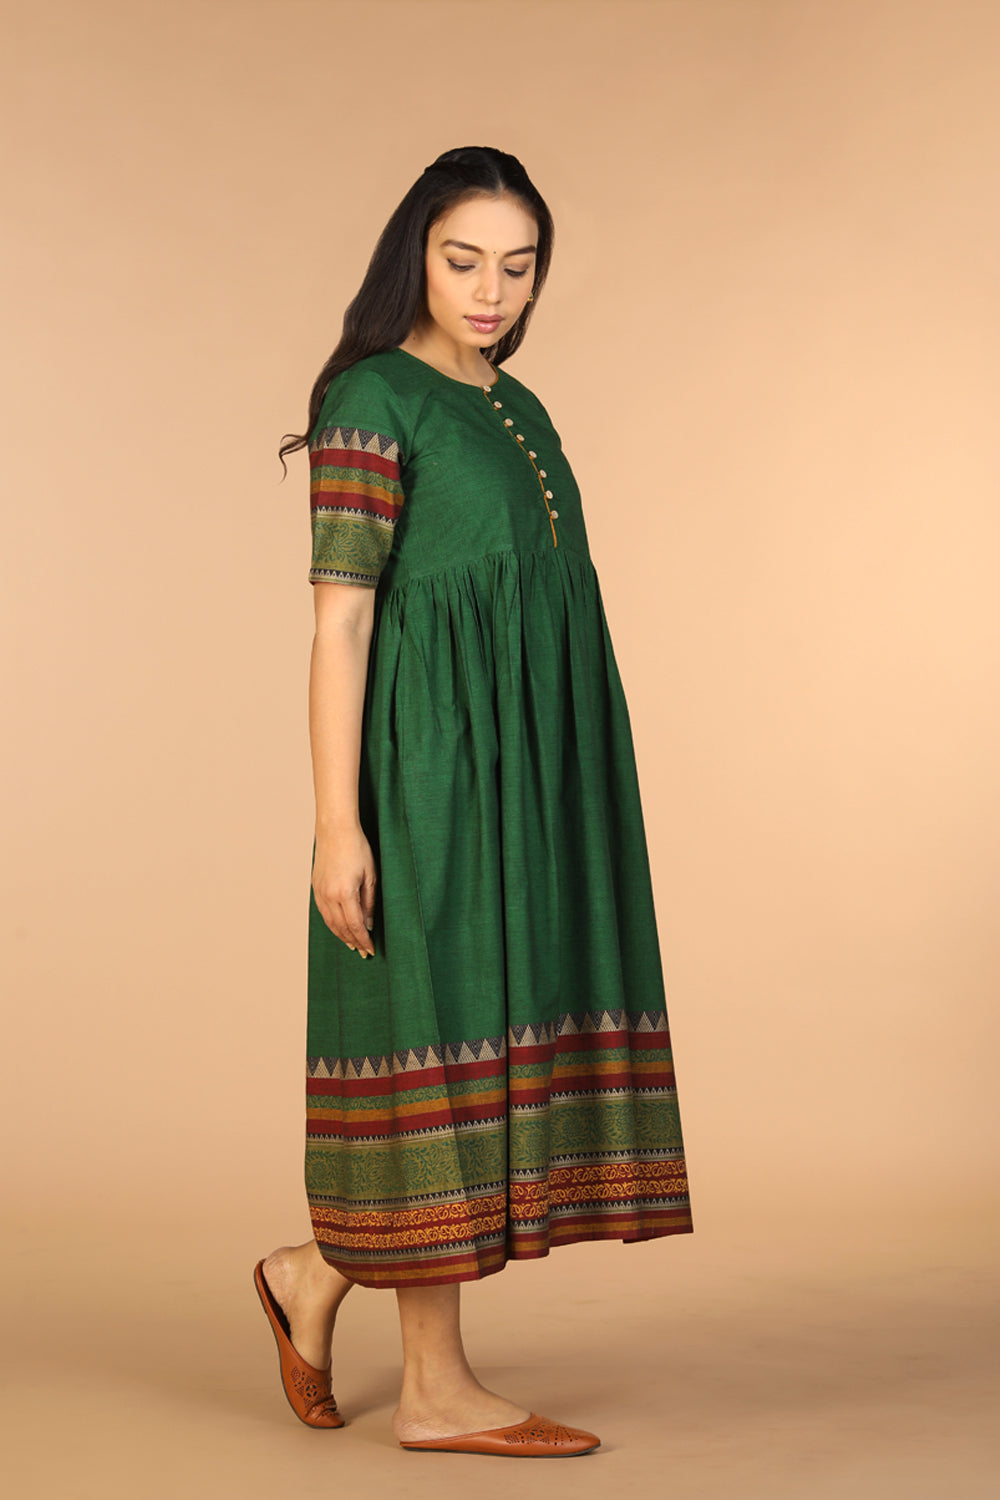 Woven ethnic dress